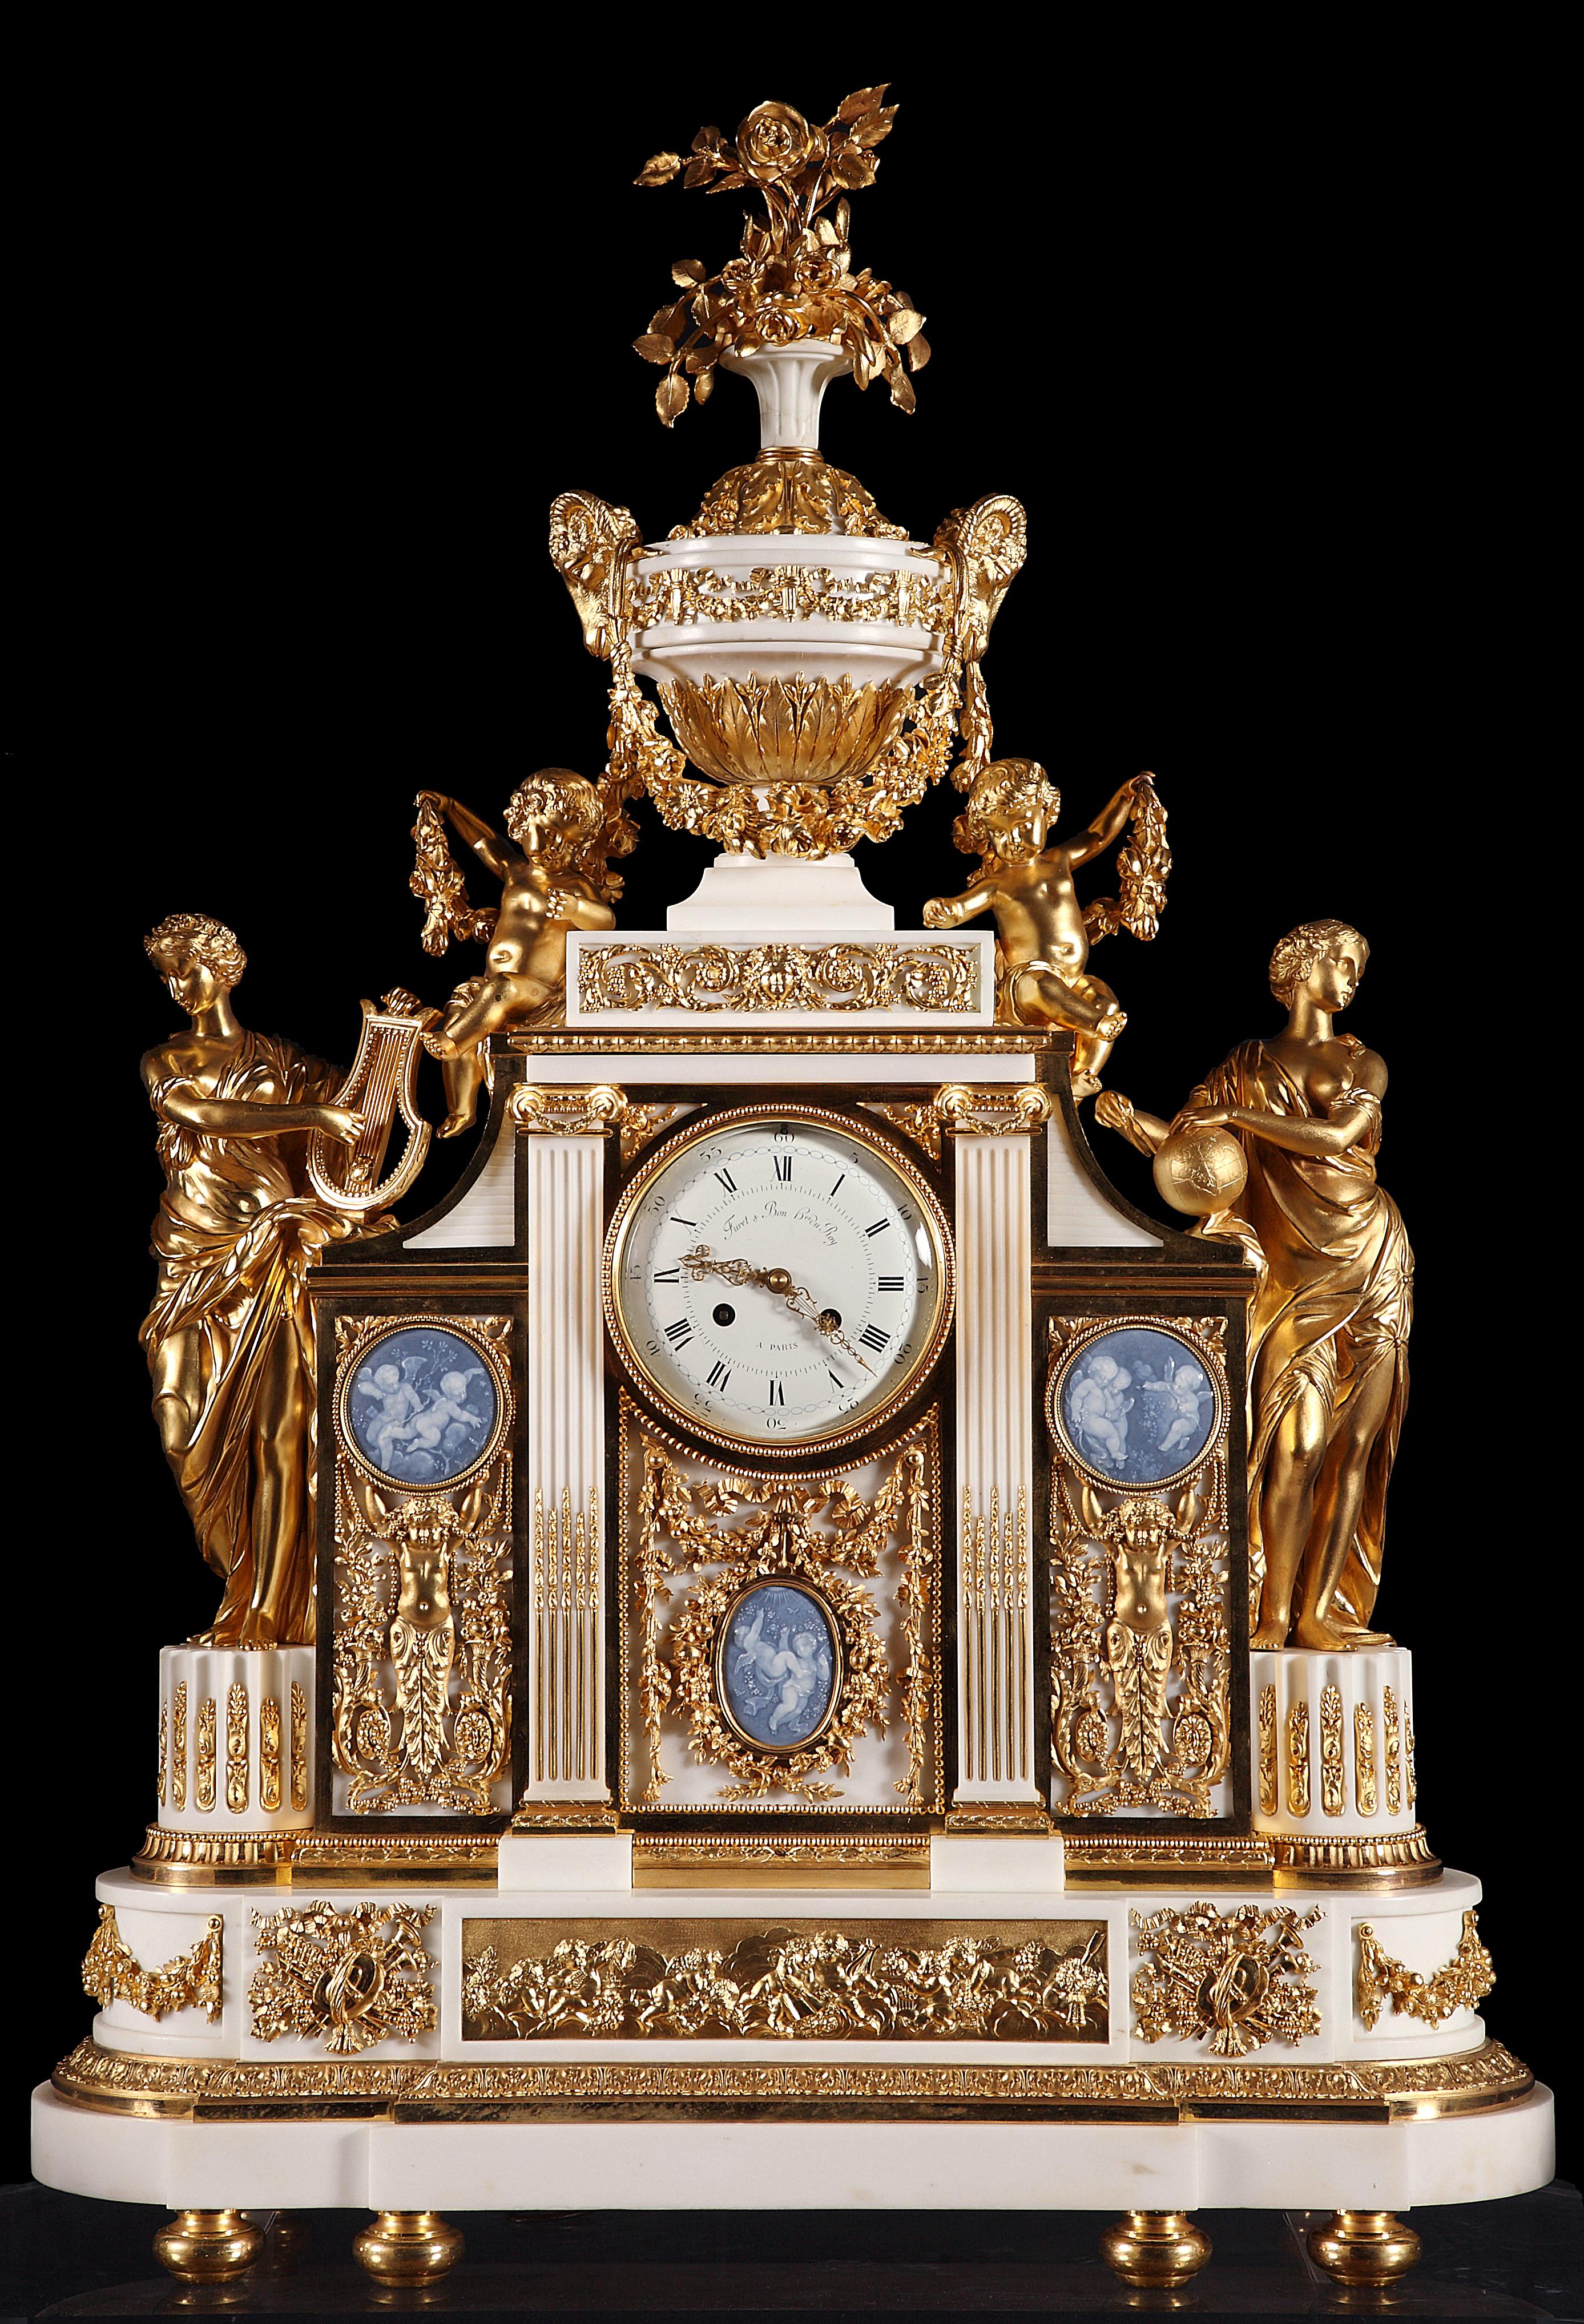 Marqué sur le cadran Furet & Bon, Hrs du Roy, à Paris

Dimensions : Horloge - Hauteur 98 cm (38 1/2 in.), largeur 70 cm (27 1/2 in.), profondeur 25 cm (9 3/4 in.)
Chandelier - Hauteur 116 cm (45 2/3 in.) & 92 cm (36 1/4 in.), diamètre 50 cm (19